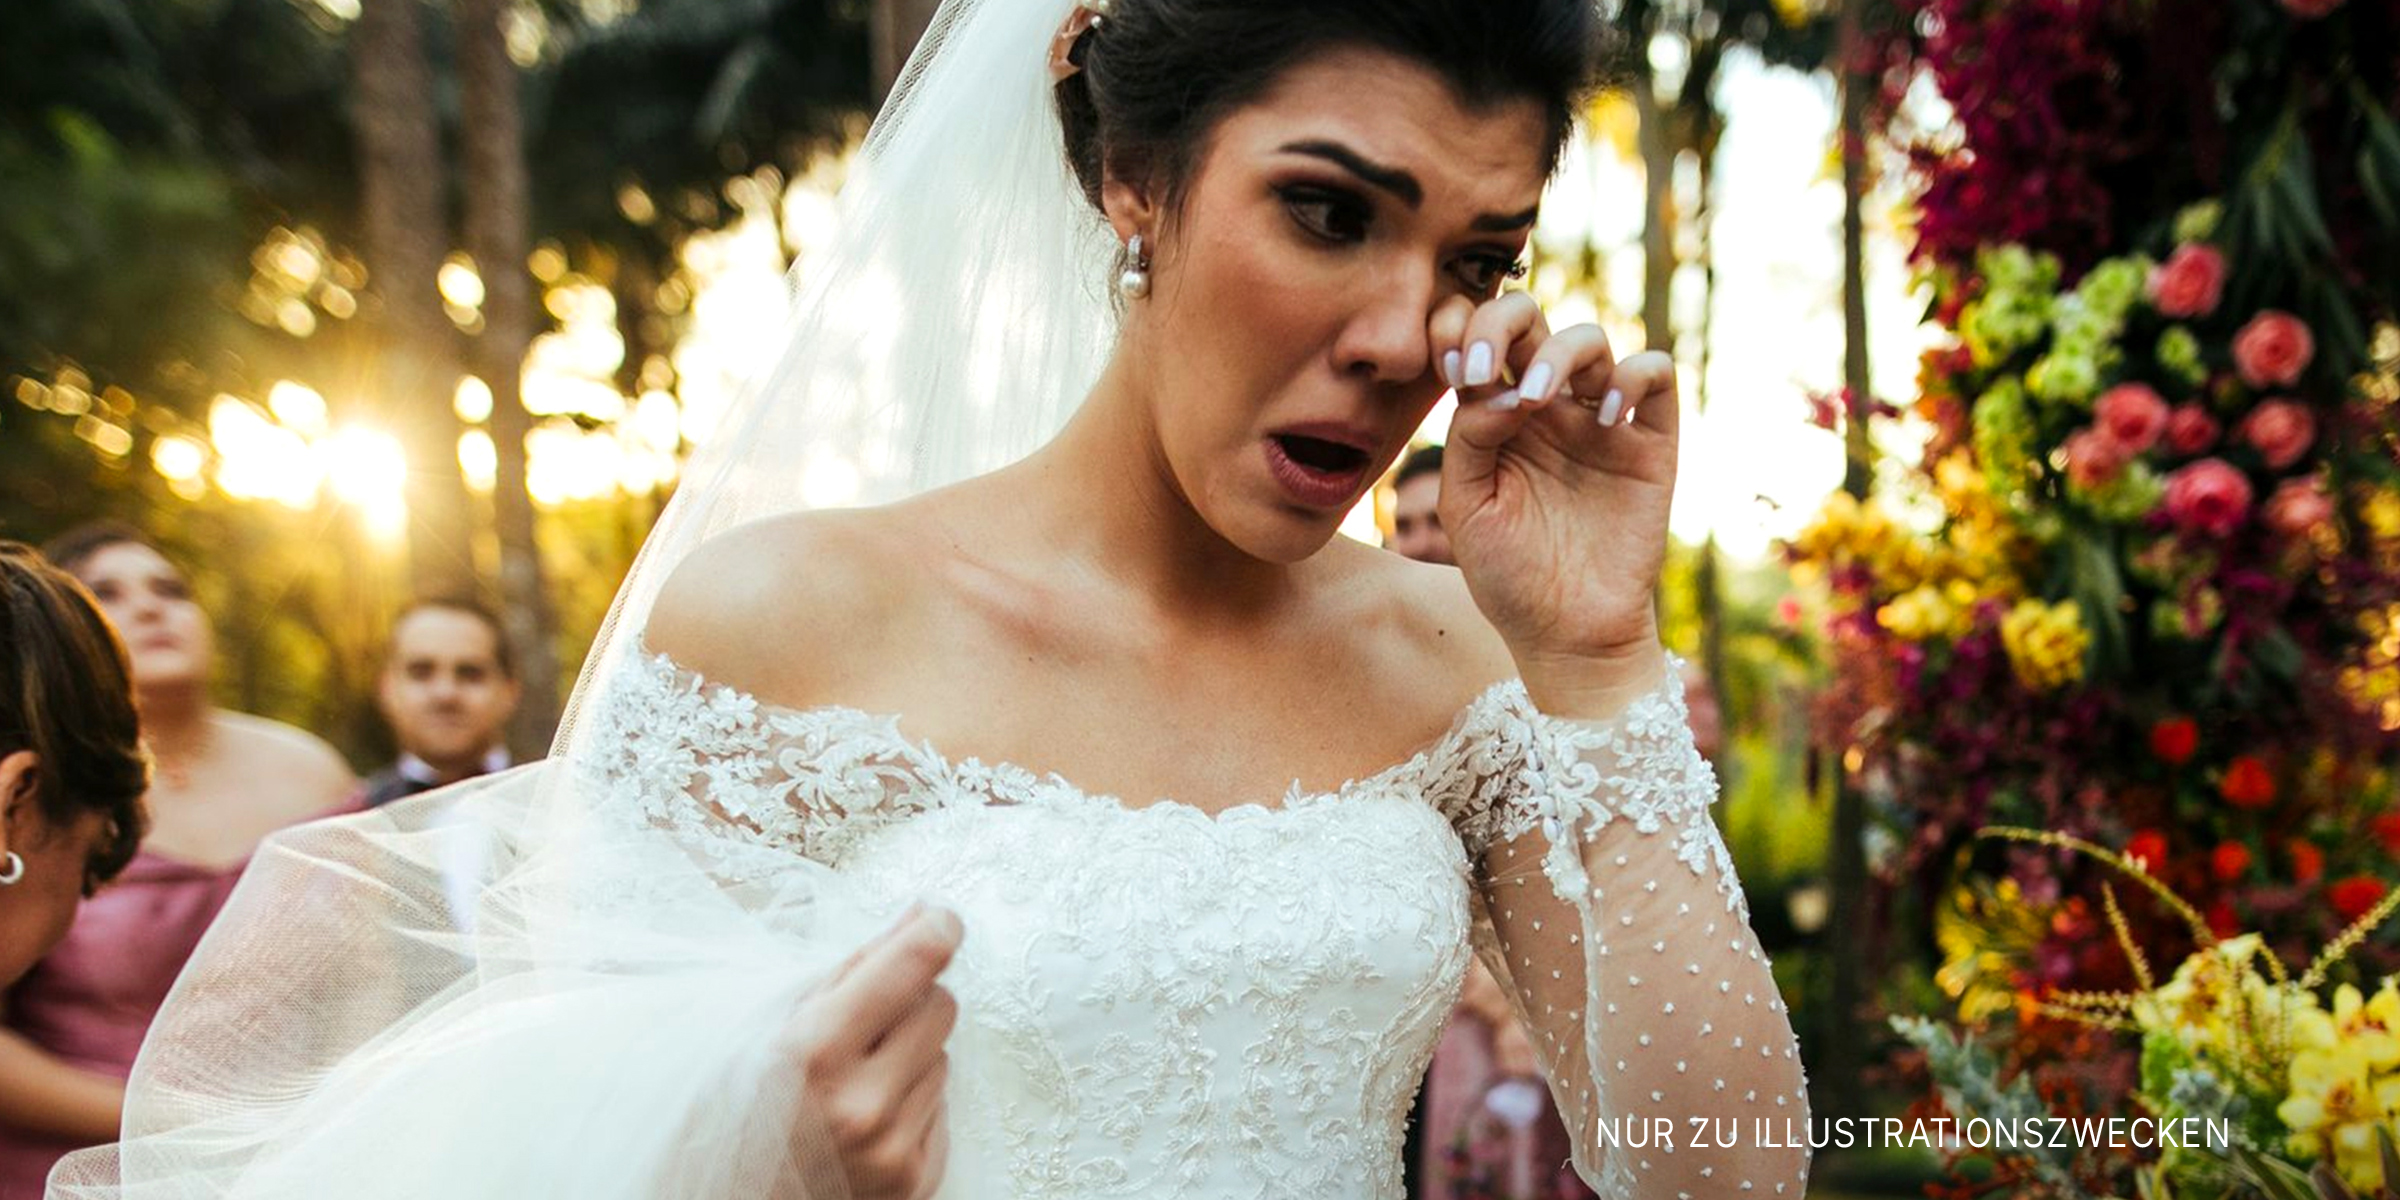 Eine weinende Braut vor dem Altar | Quelle: Getty Images